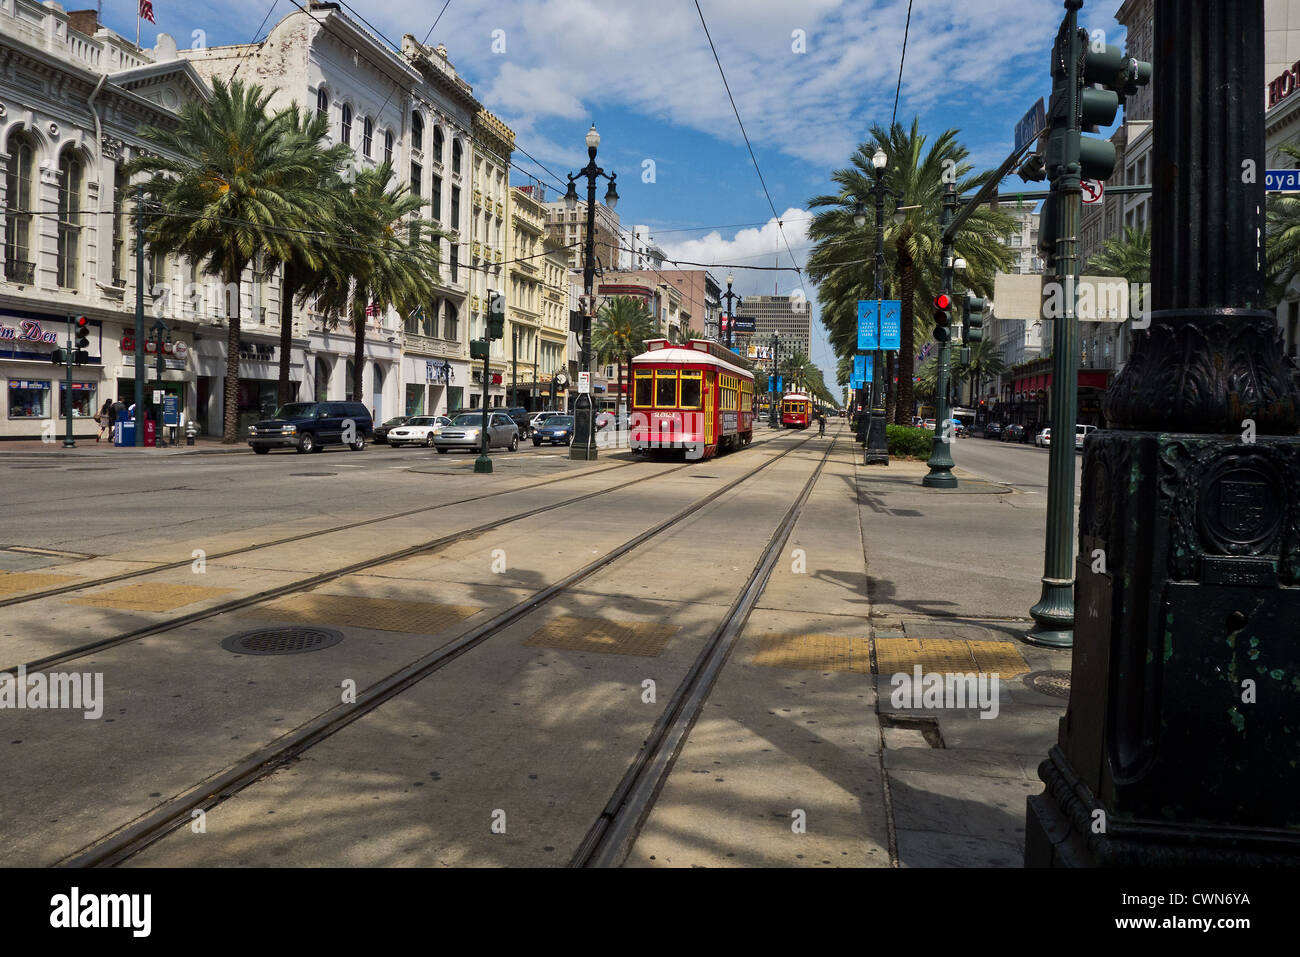 Ein Blick auf Canal Street in New Orleans auf der Suche uptown, Straßenbahnen, allgemeinen Verkehr, Palmen, Geschäfte und Hotels zeigt. Stockfoto